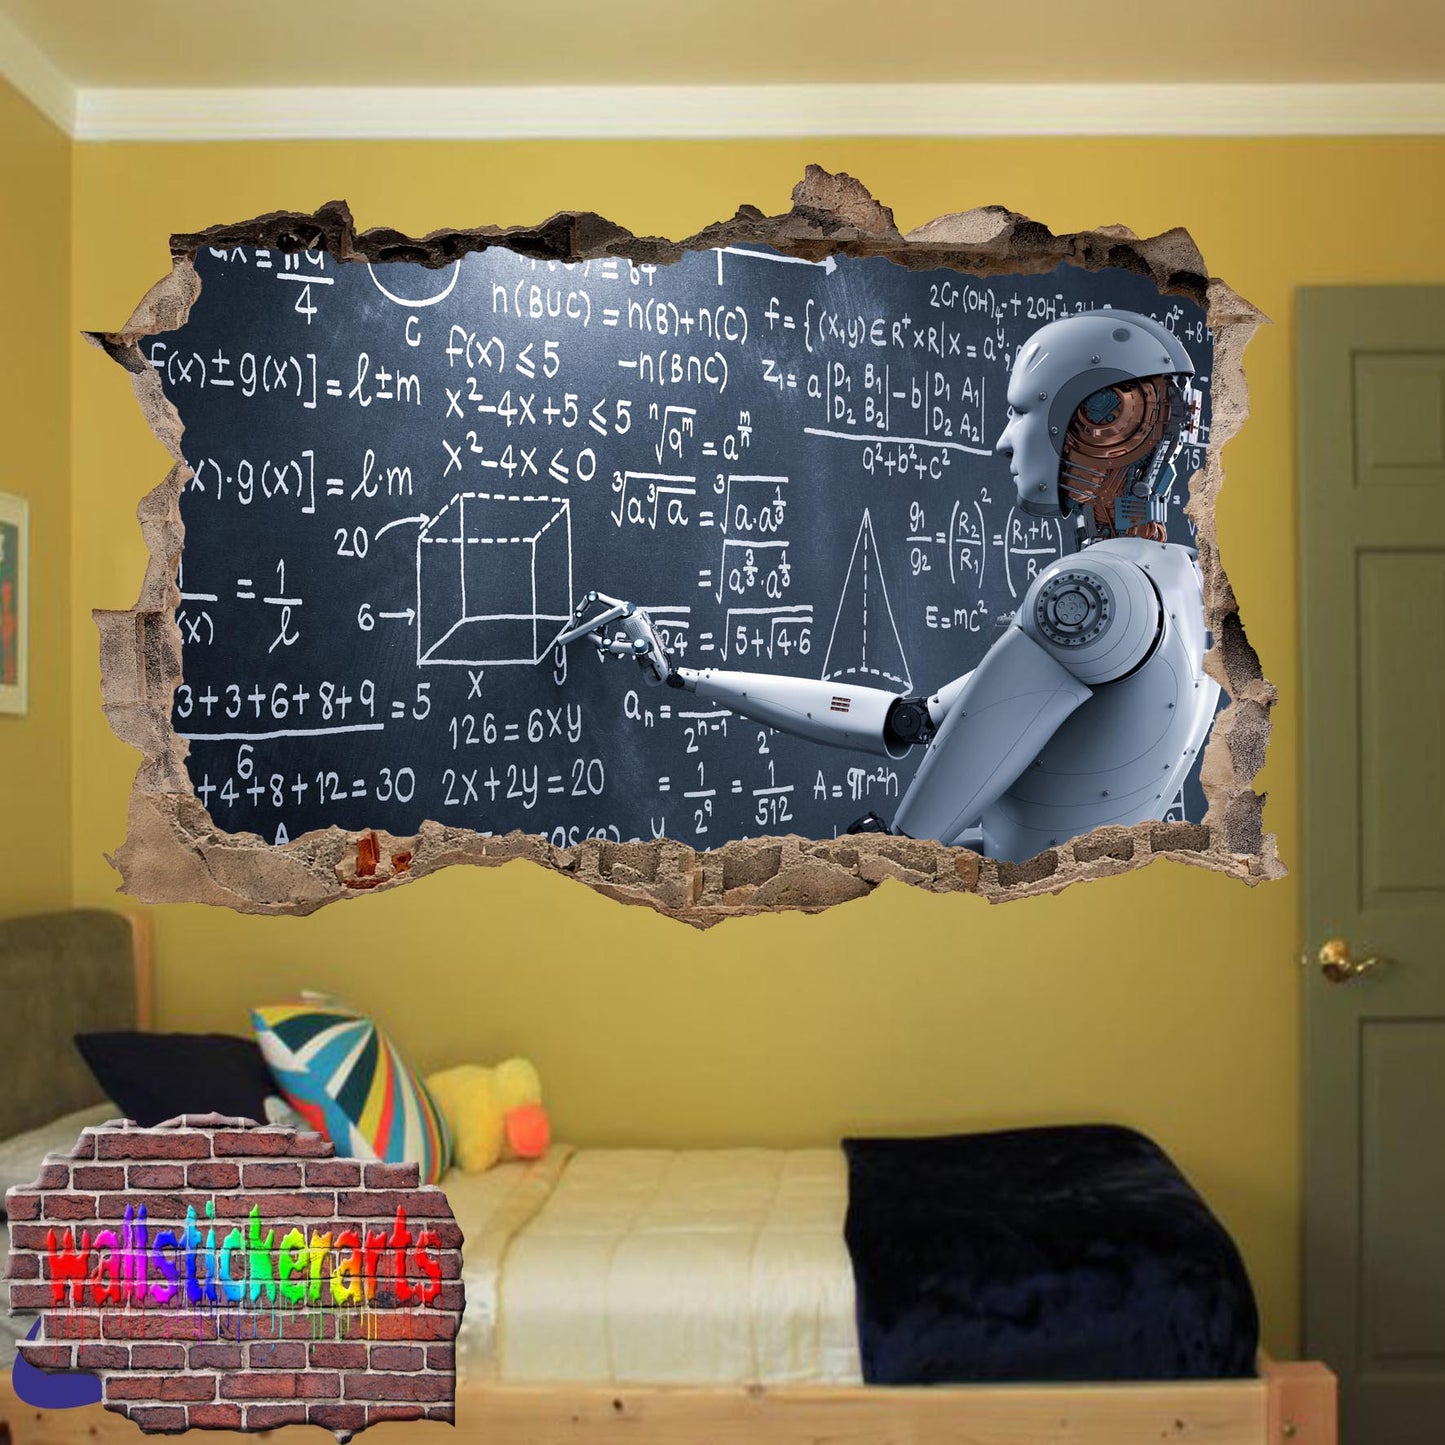 Ai Artificial Intelligence Robot Art 3d Effect Wall Sticker Room Office Nursery Shop Decoration Decal Mural VJ9